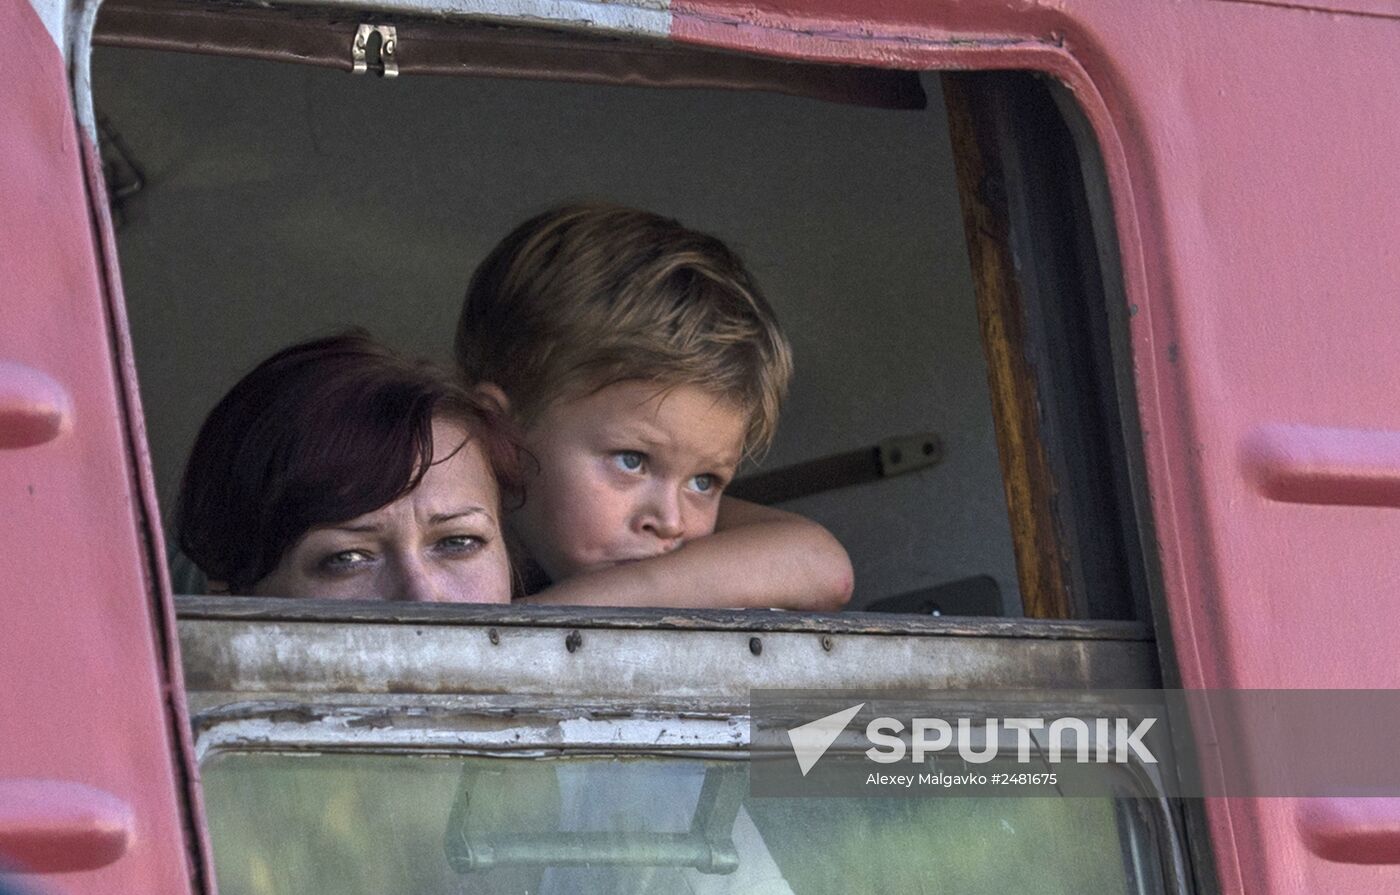 Ukrainian refugees arrive in Omsk